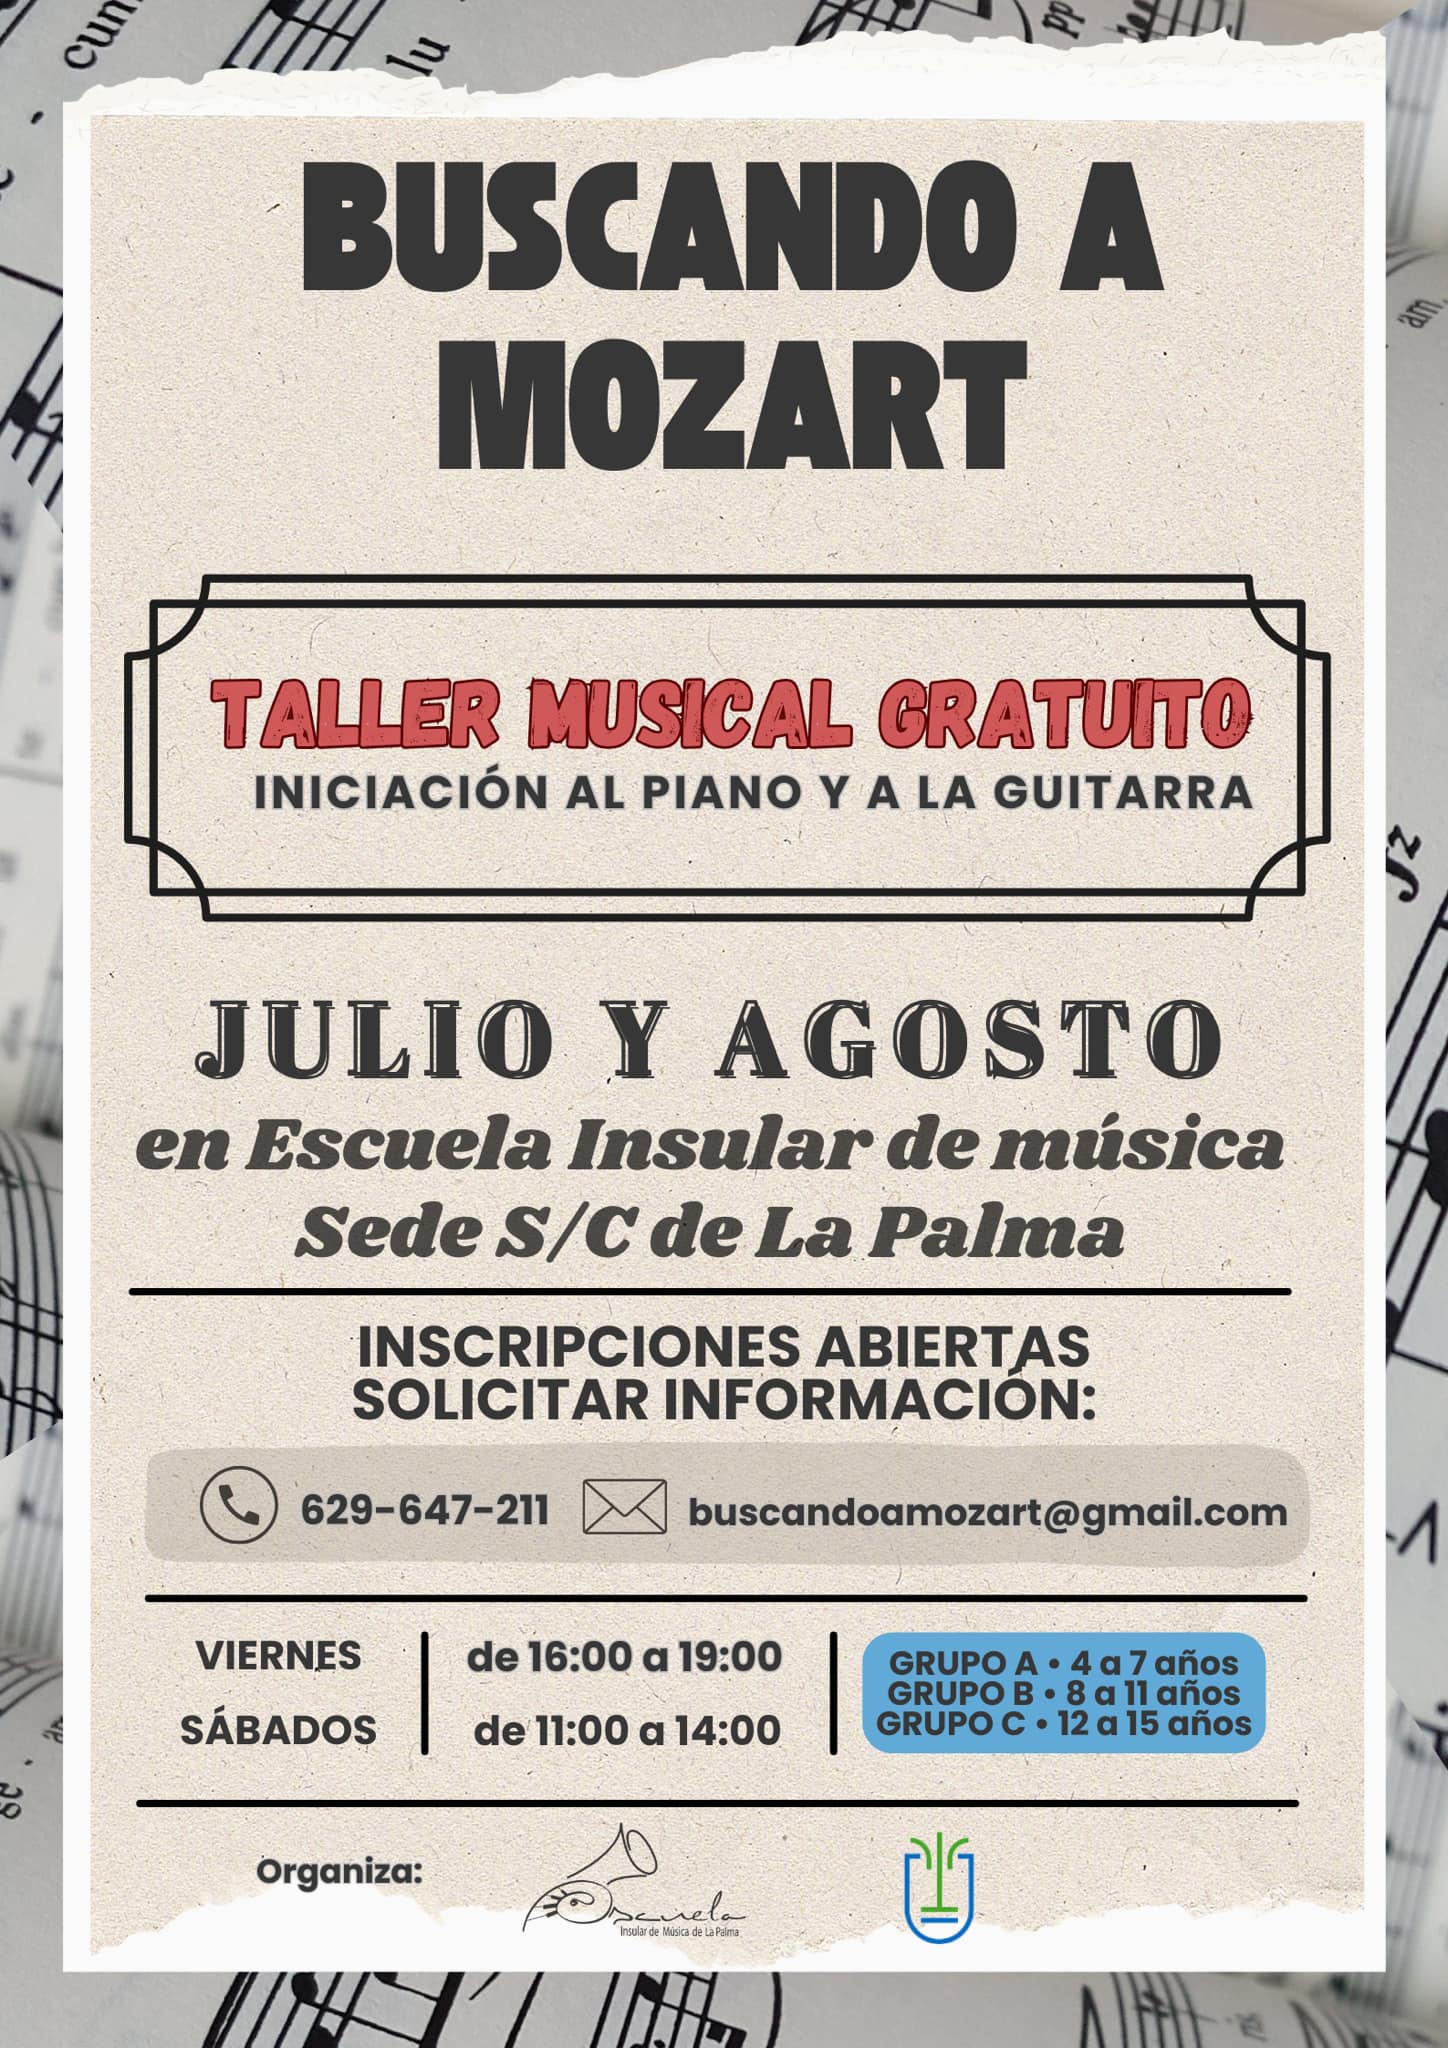 "Buscando a Mozart": Taller musical gratuito